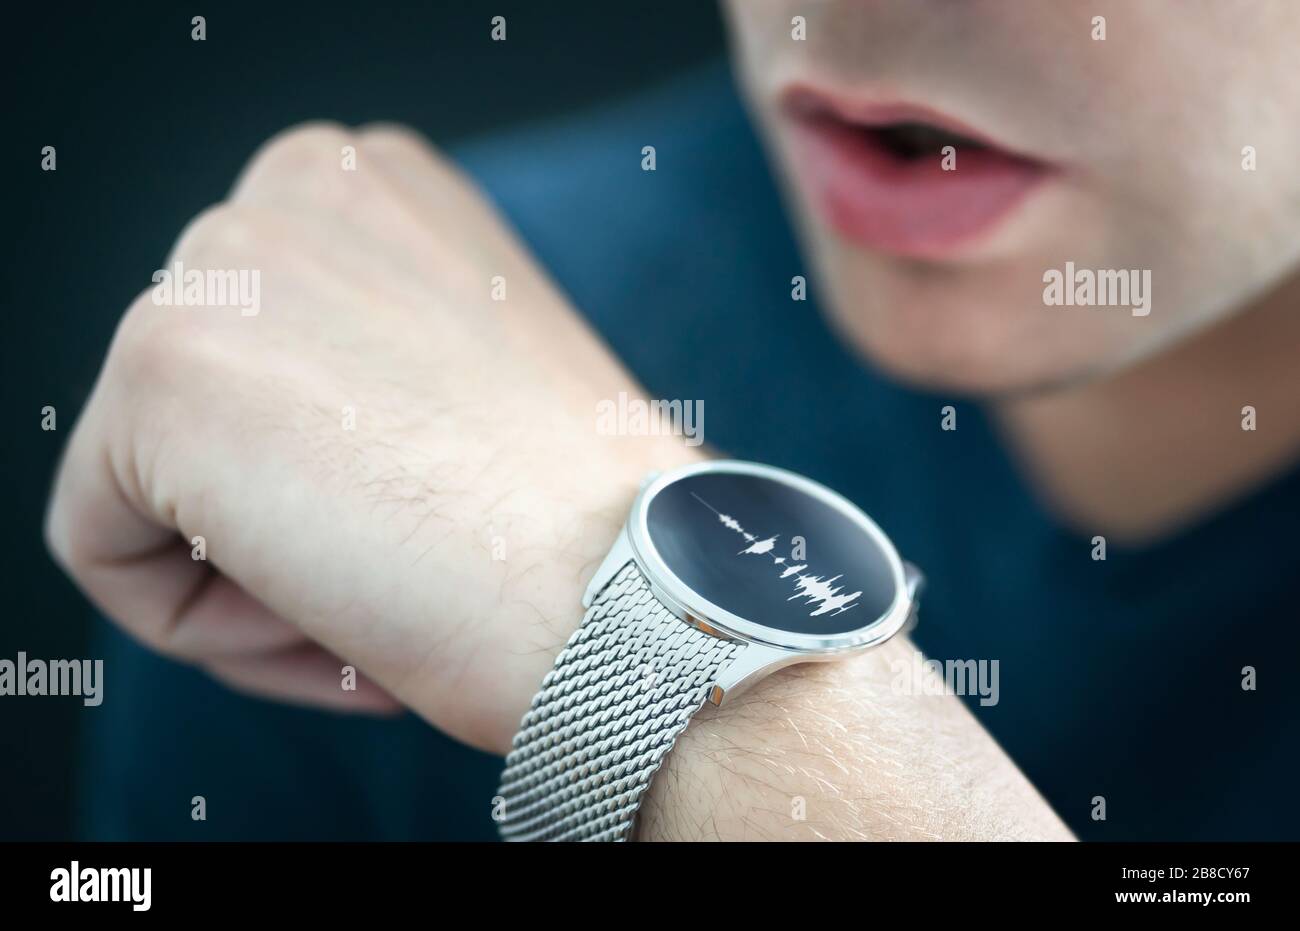 Sprachaufzeichnungs- oder Spracherkennungstechnologie in Smart Watch. Mann spricht mit Smartwatch-Mikrofon und Recorder. Persönliche Assistentenanwendung, um das Kommando zu erteilen. Stockfoto